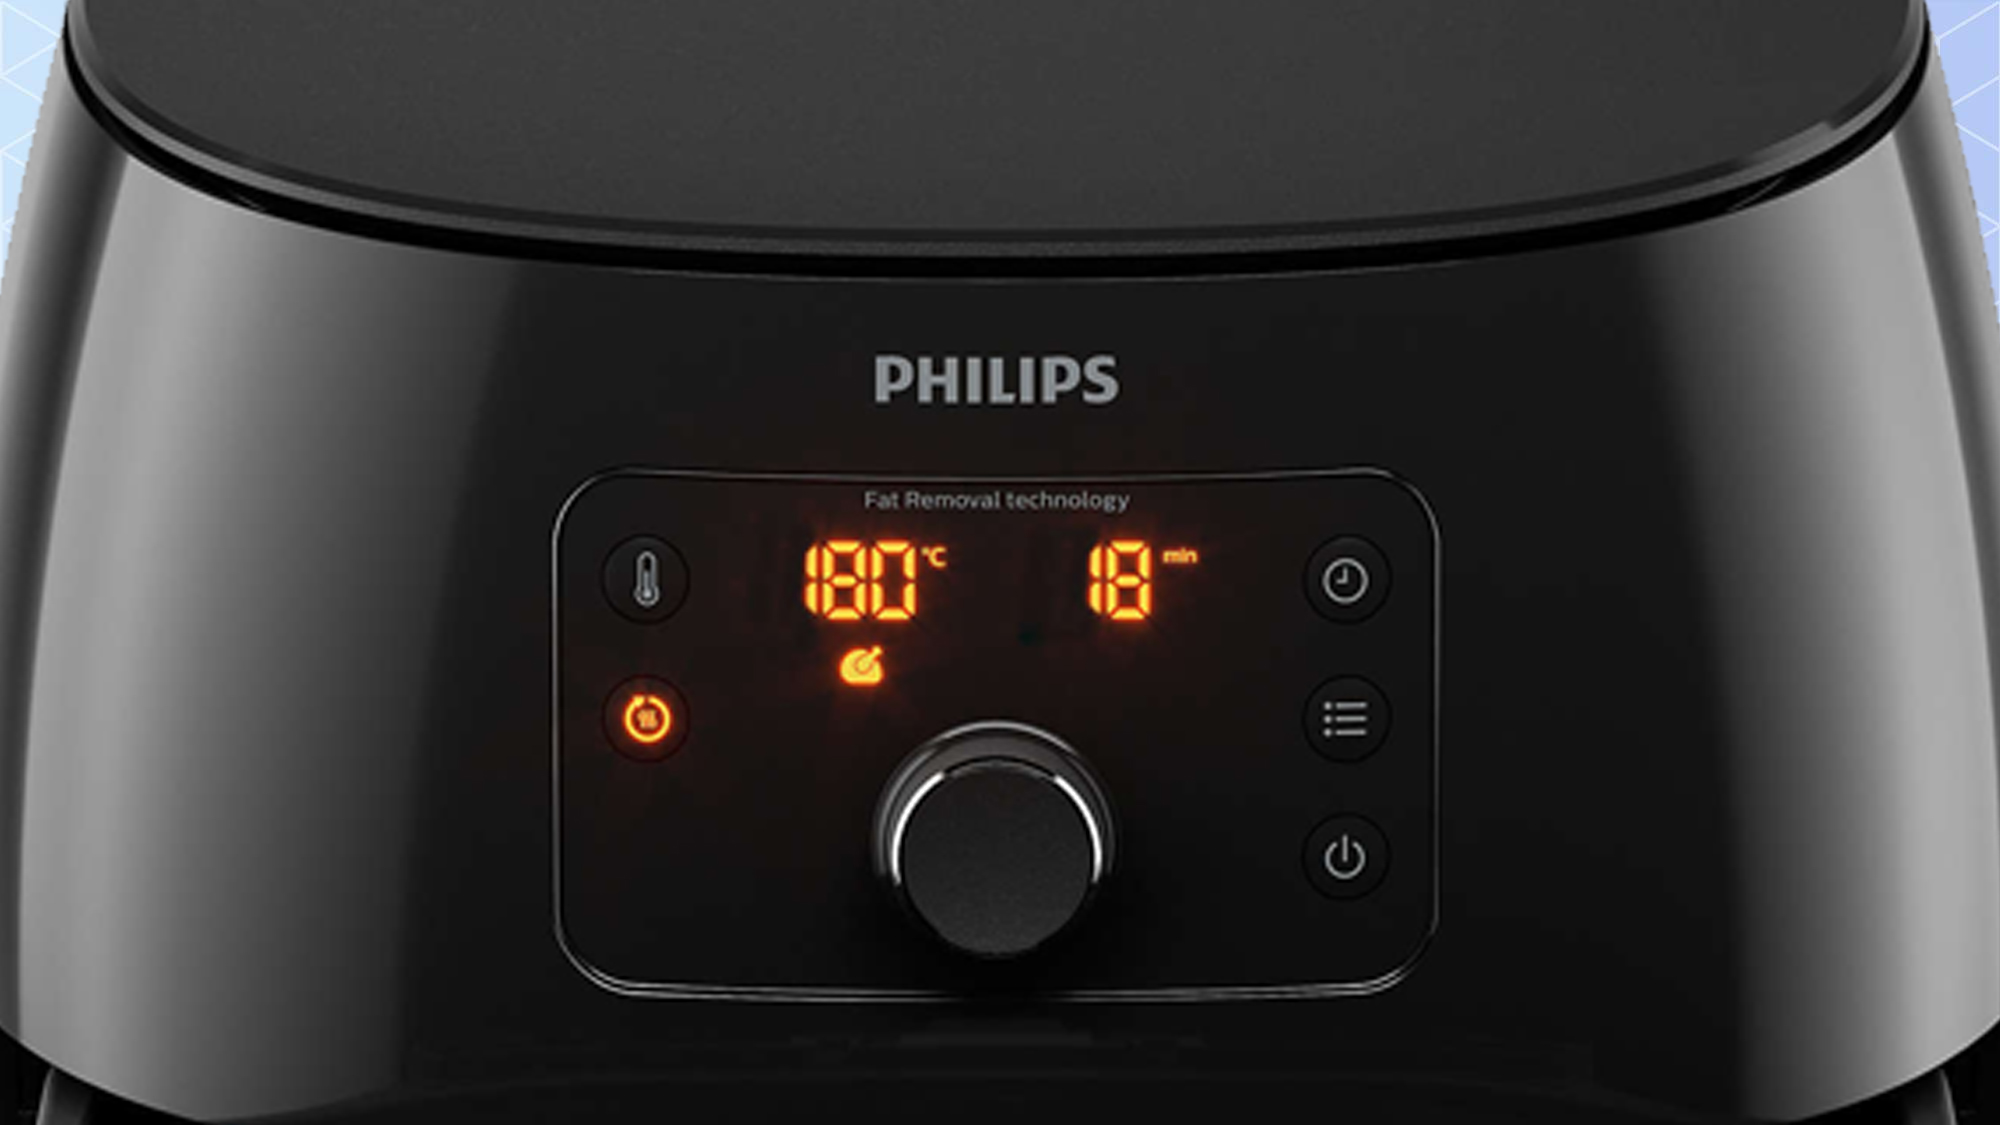 Philips Premium Airfryer XXL review